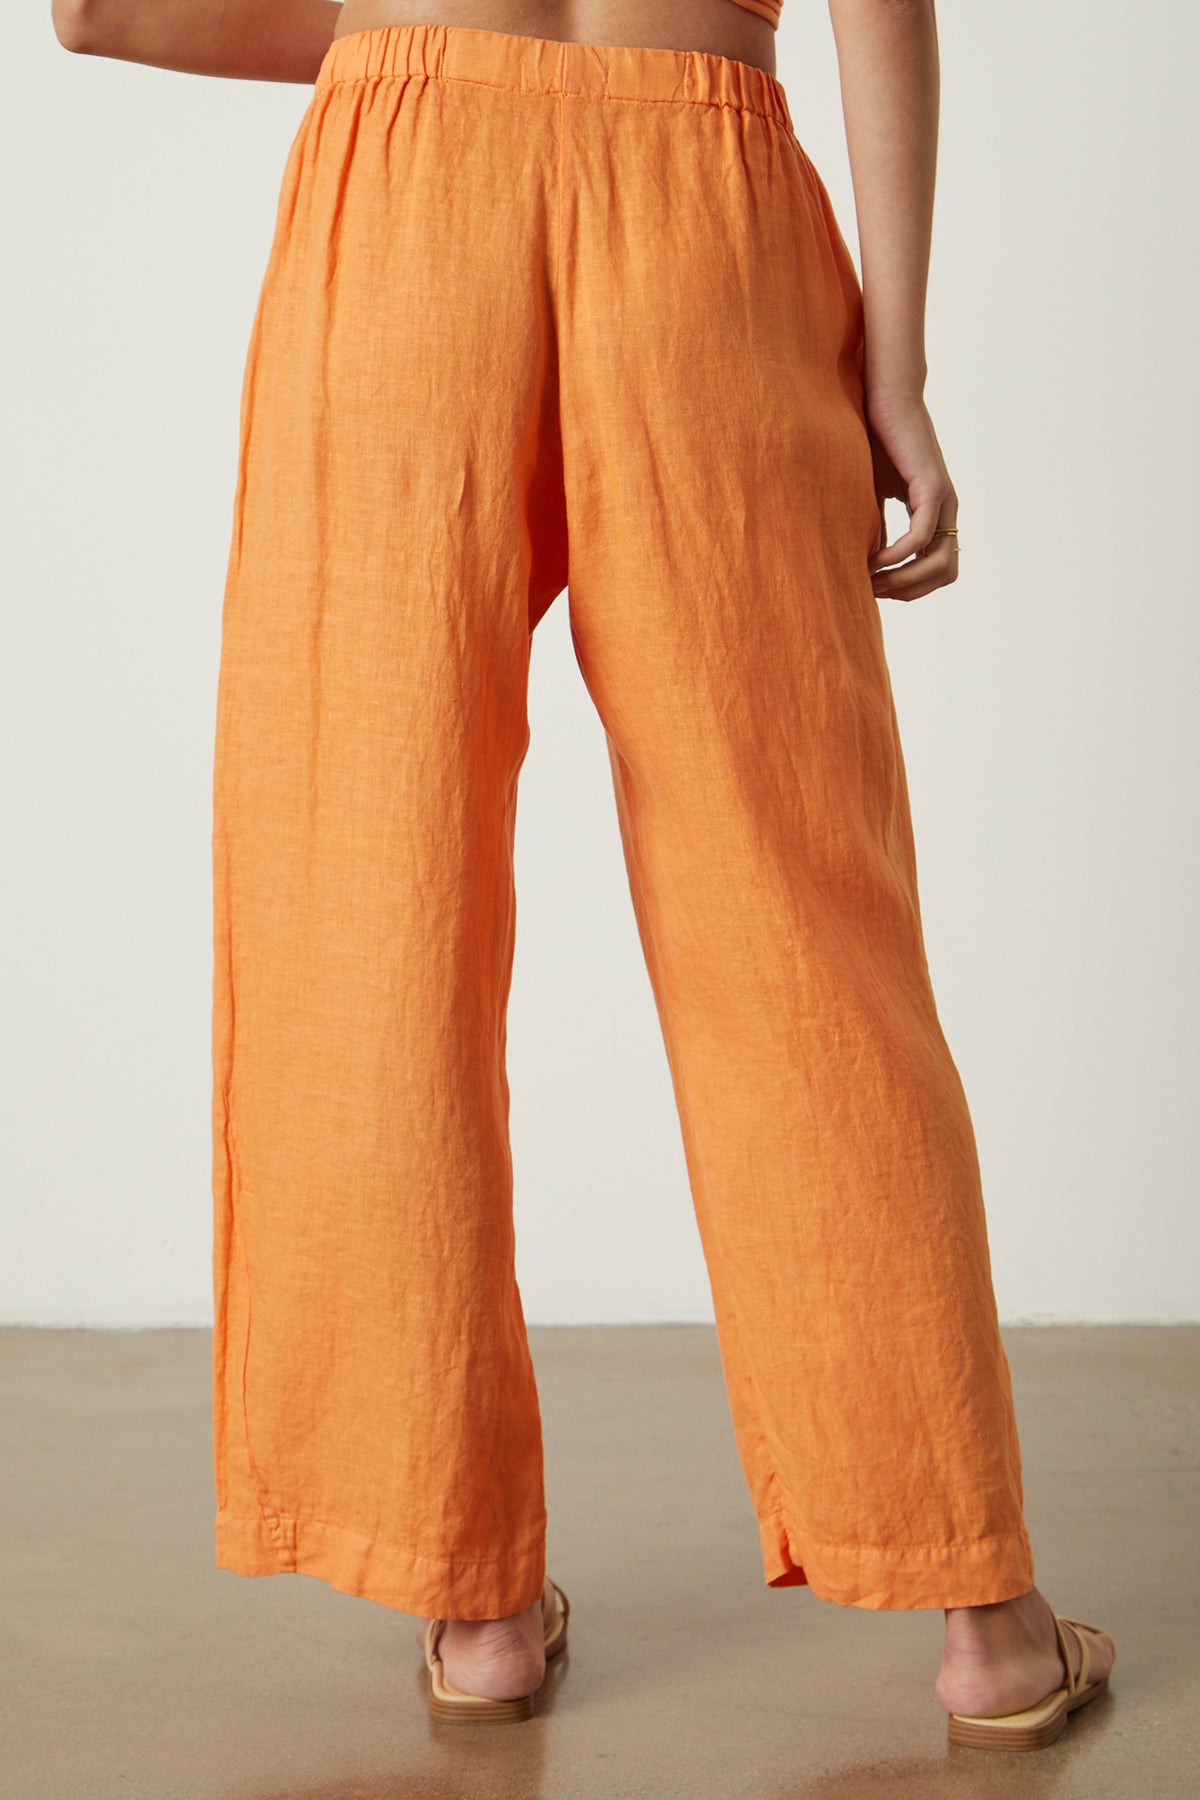 Lola pant in orange heat linen back-26022719455425